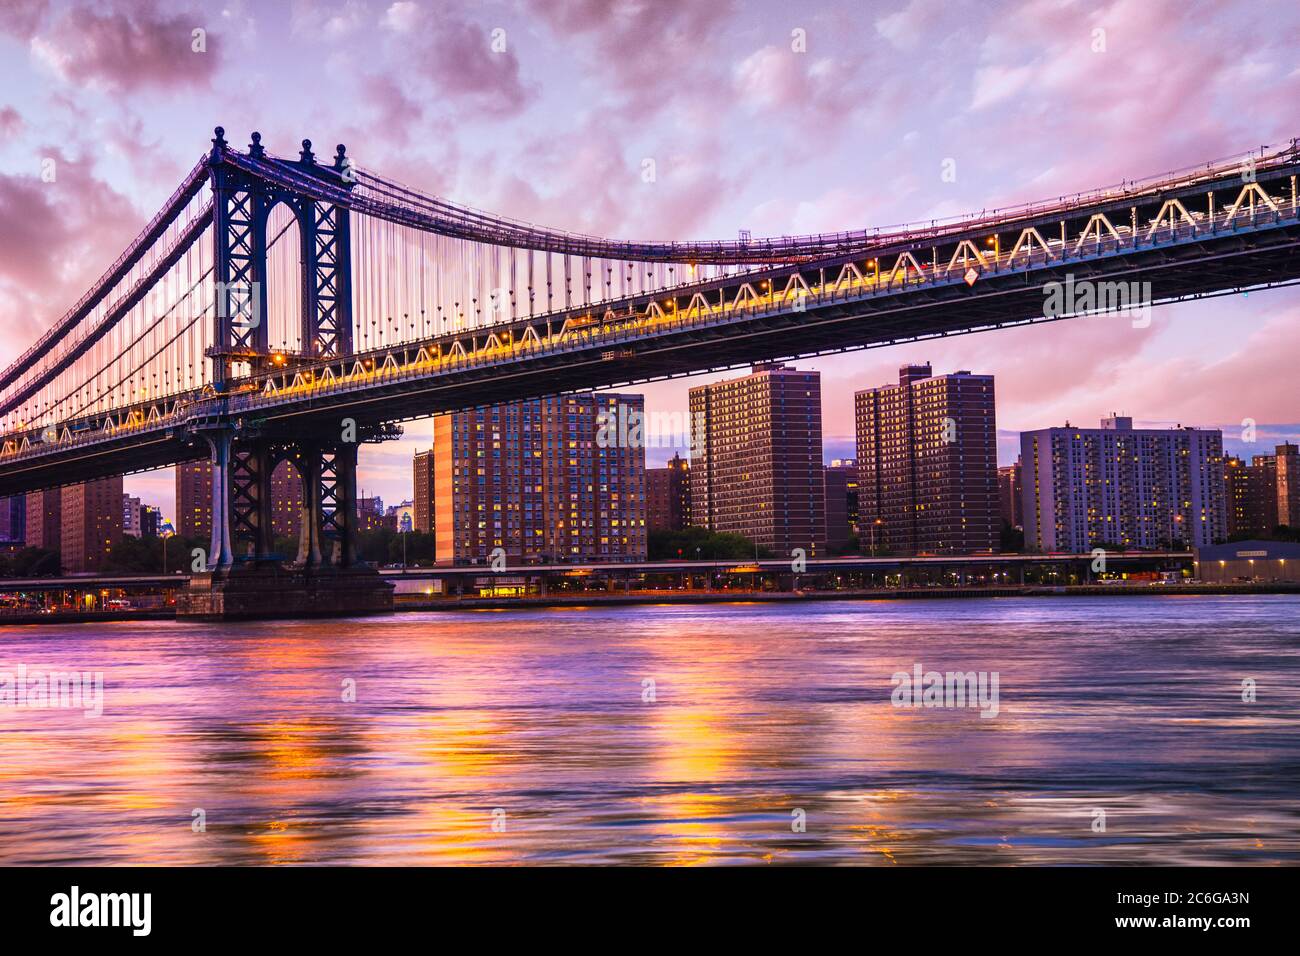 Magnifique pont de Manhattan de Brooklyn à New York vu au coucher du soleil Banque D'Images